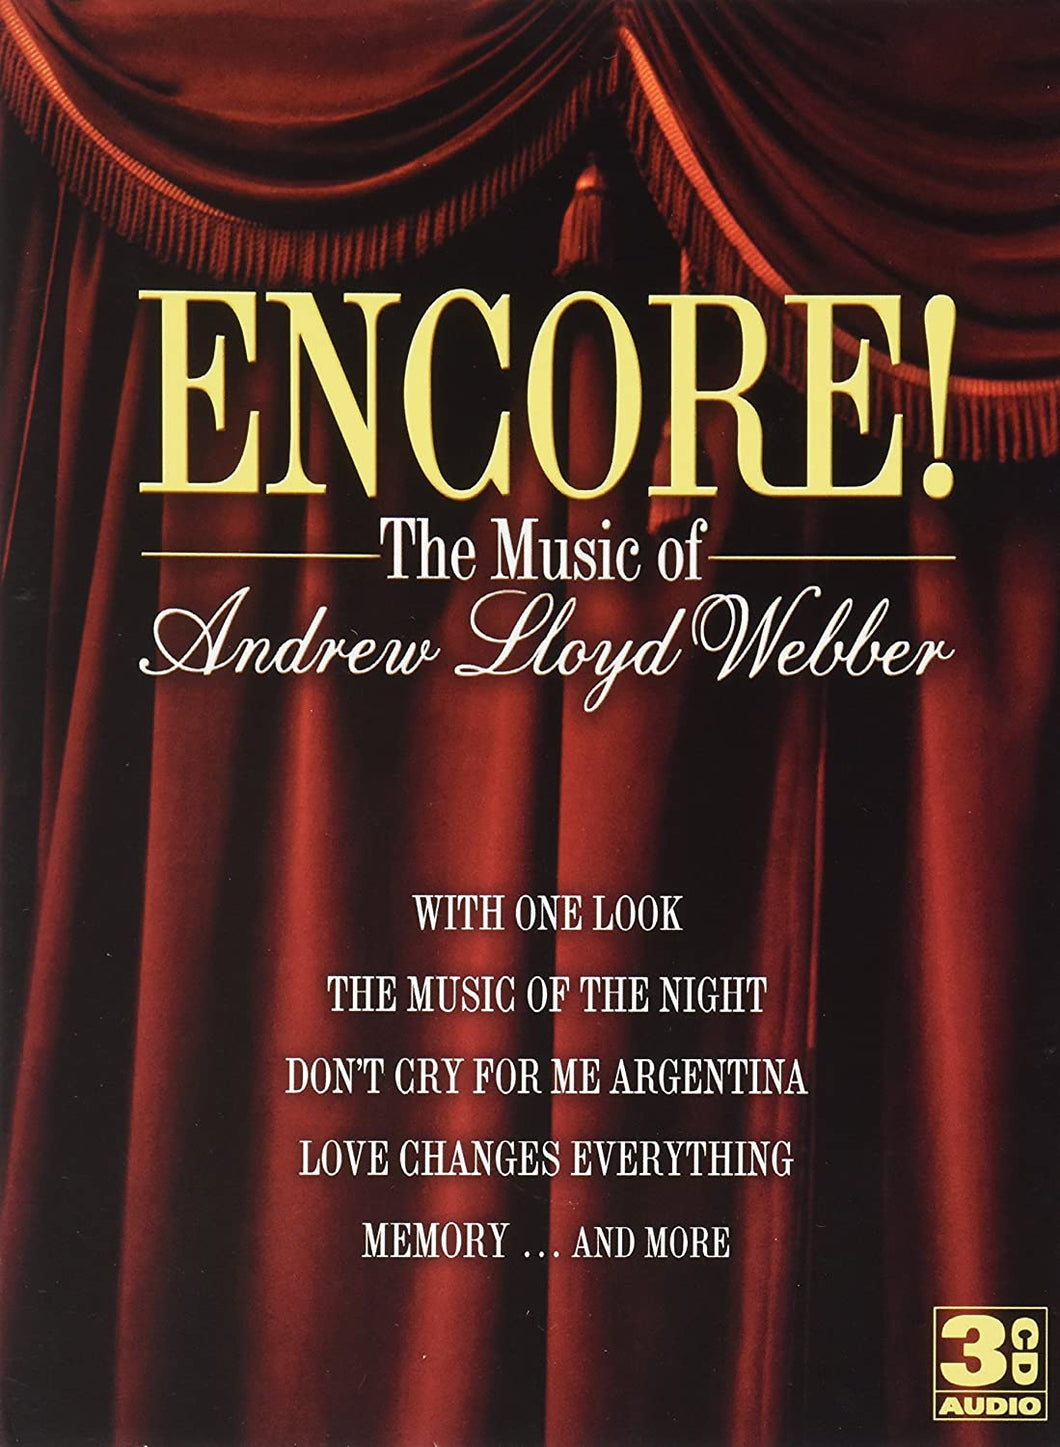 Encore!: The Music of Andrew Lloyd Webber - 3 CD Box Set